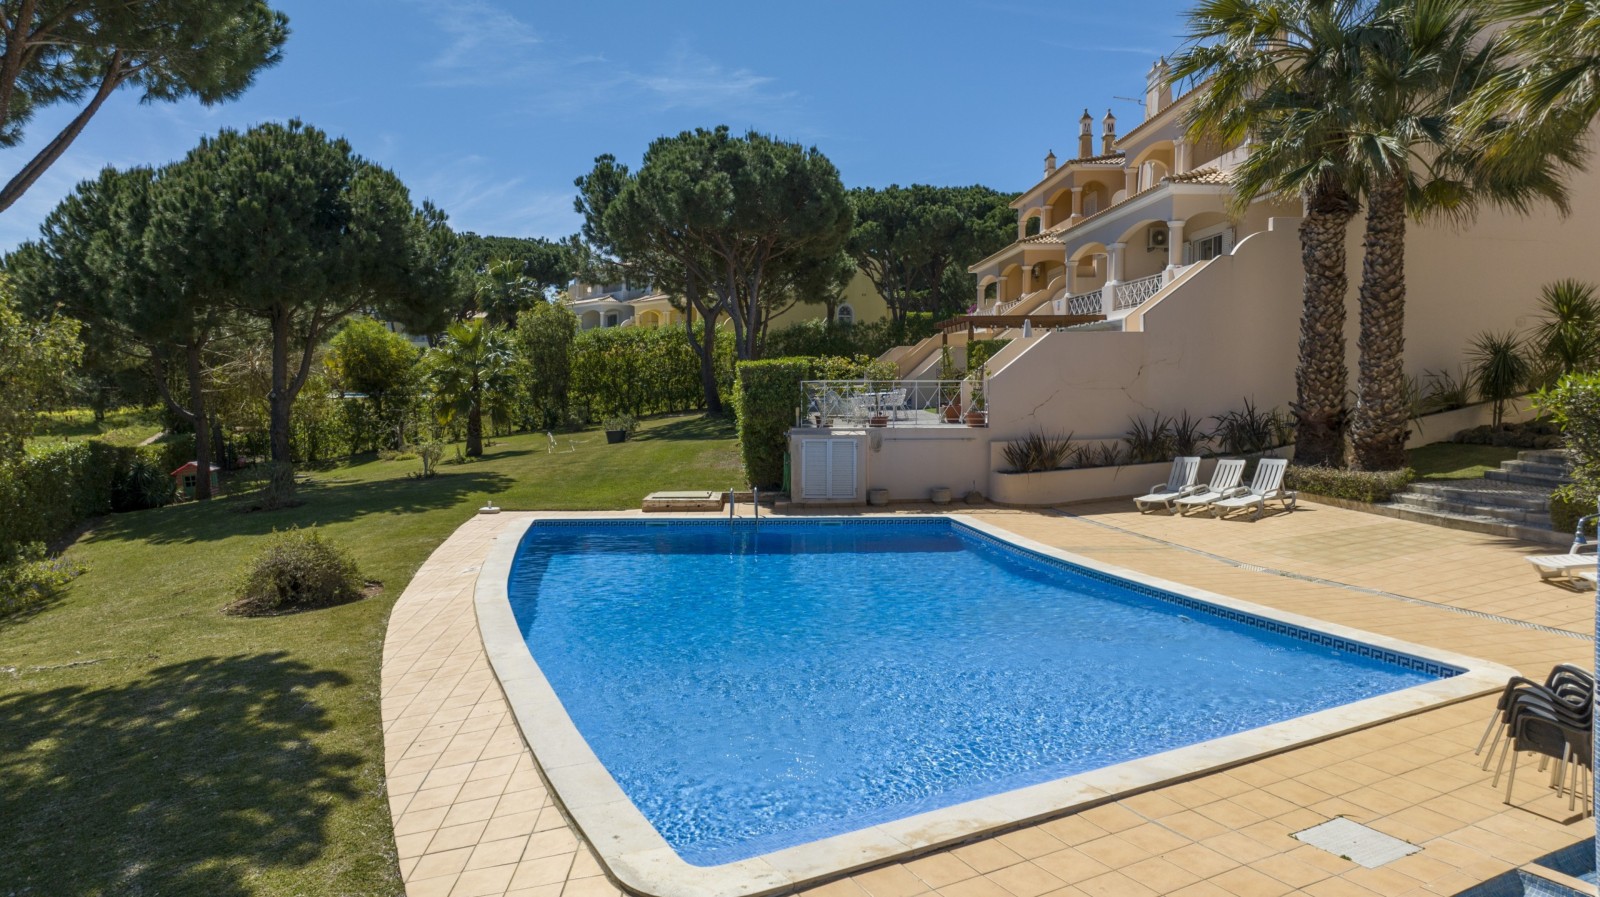 Villa adosada de 4 dormitorios, con piscina, en venta en Vilamoura, Algarve_237486